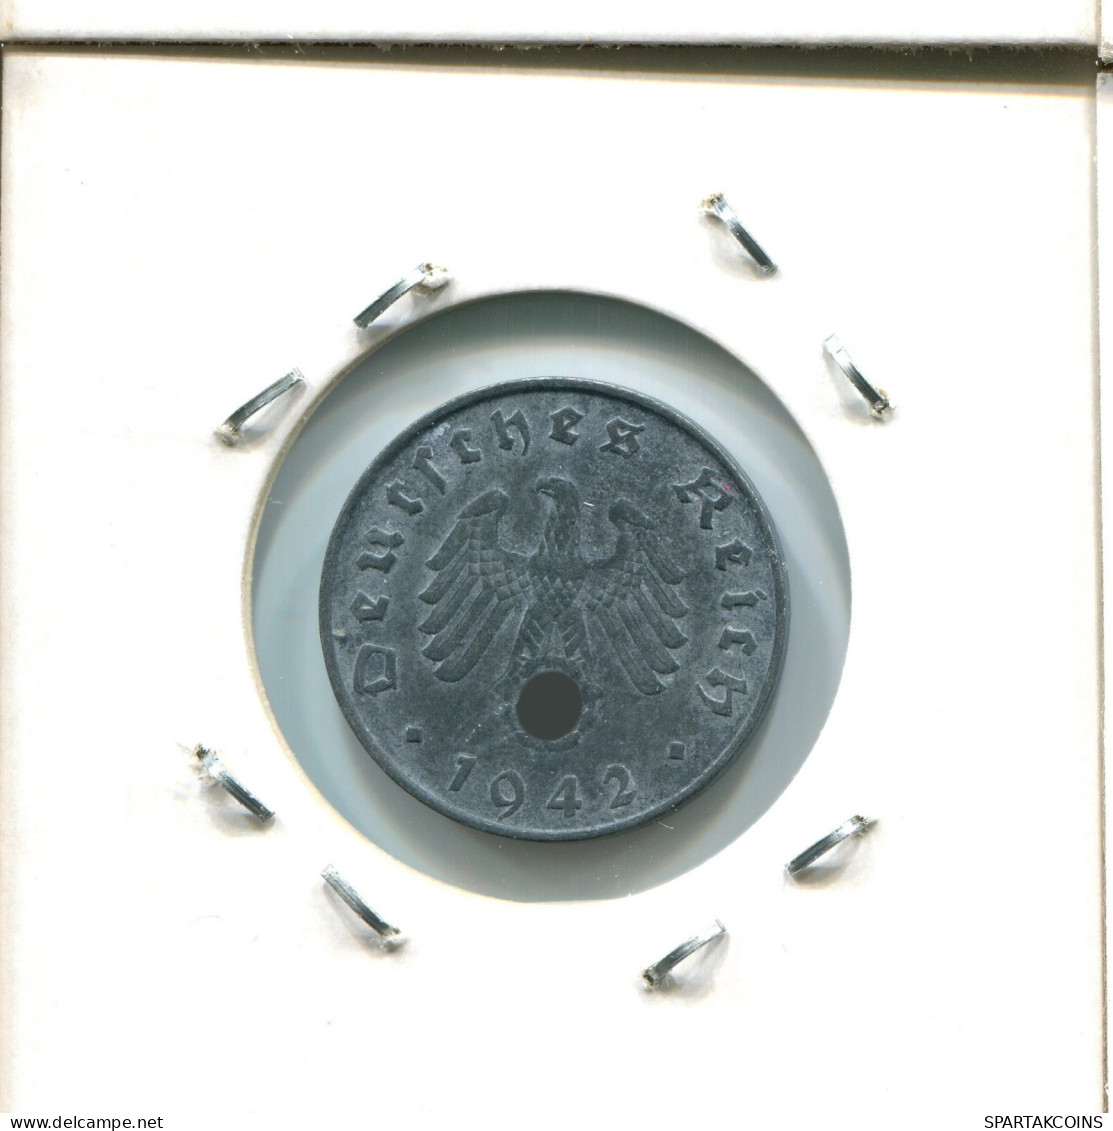 10 REISCHPFENNIG 1942 B GERMANY Coin #AW462.U.A - 10 Reichspfennig